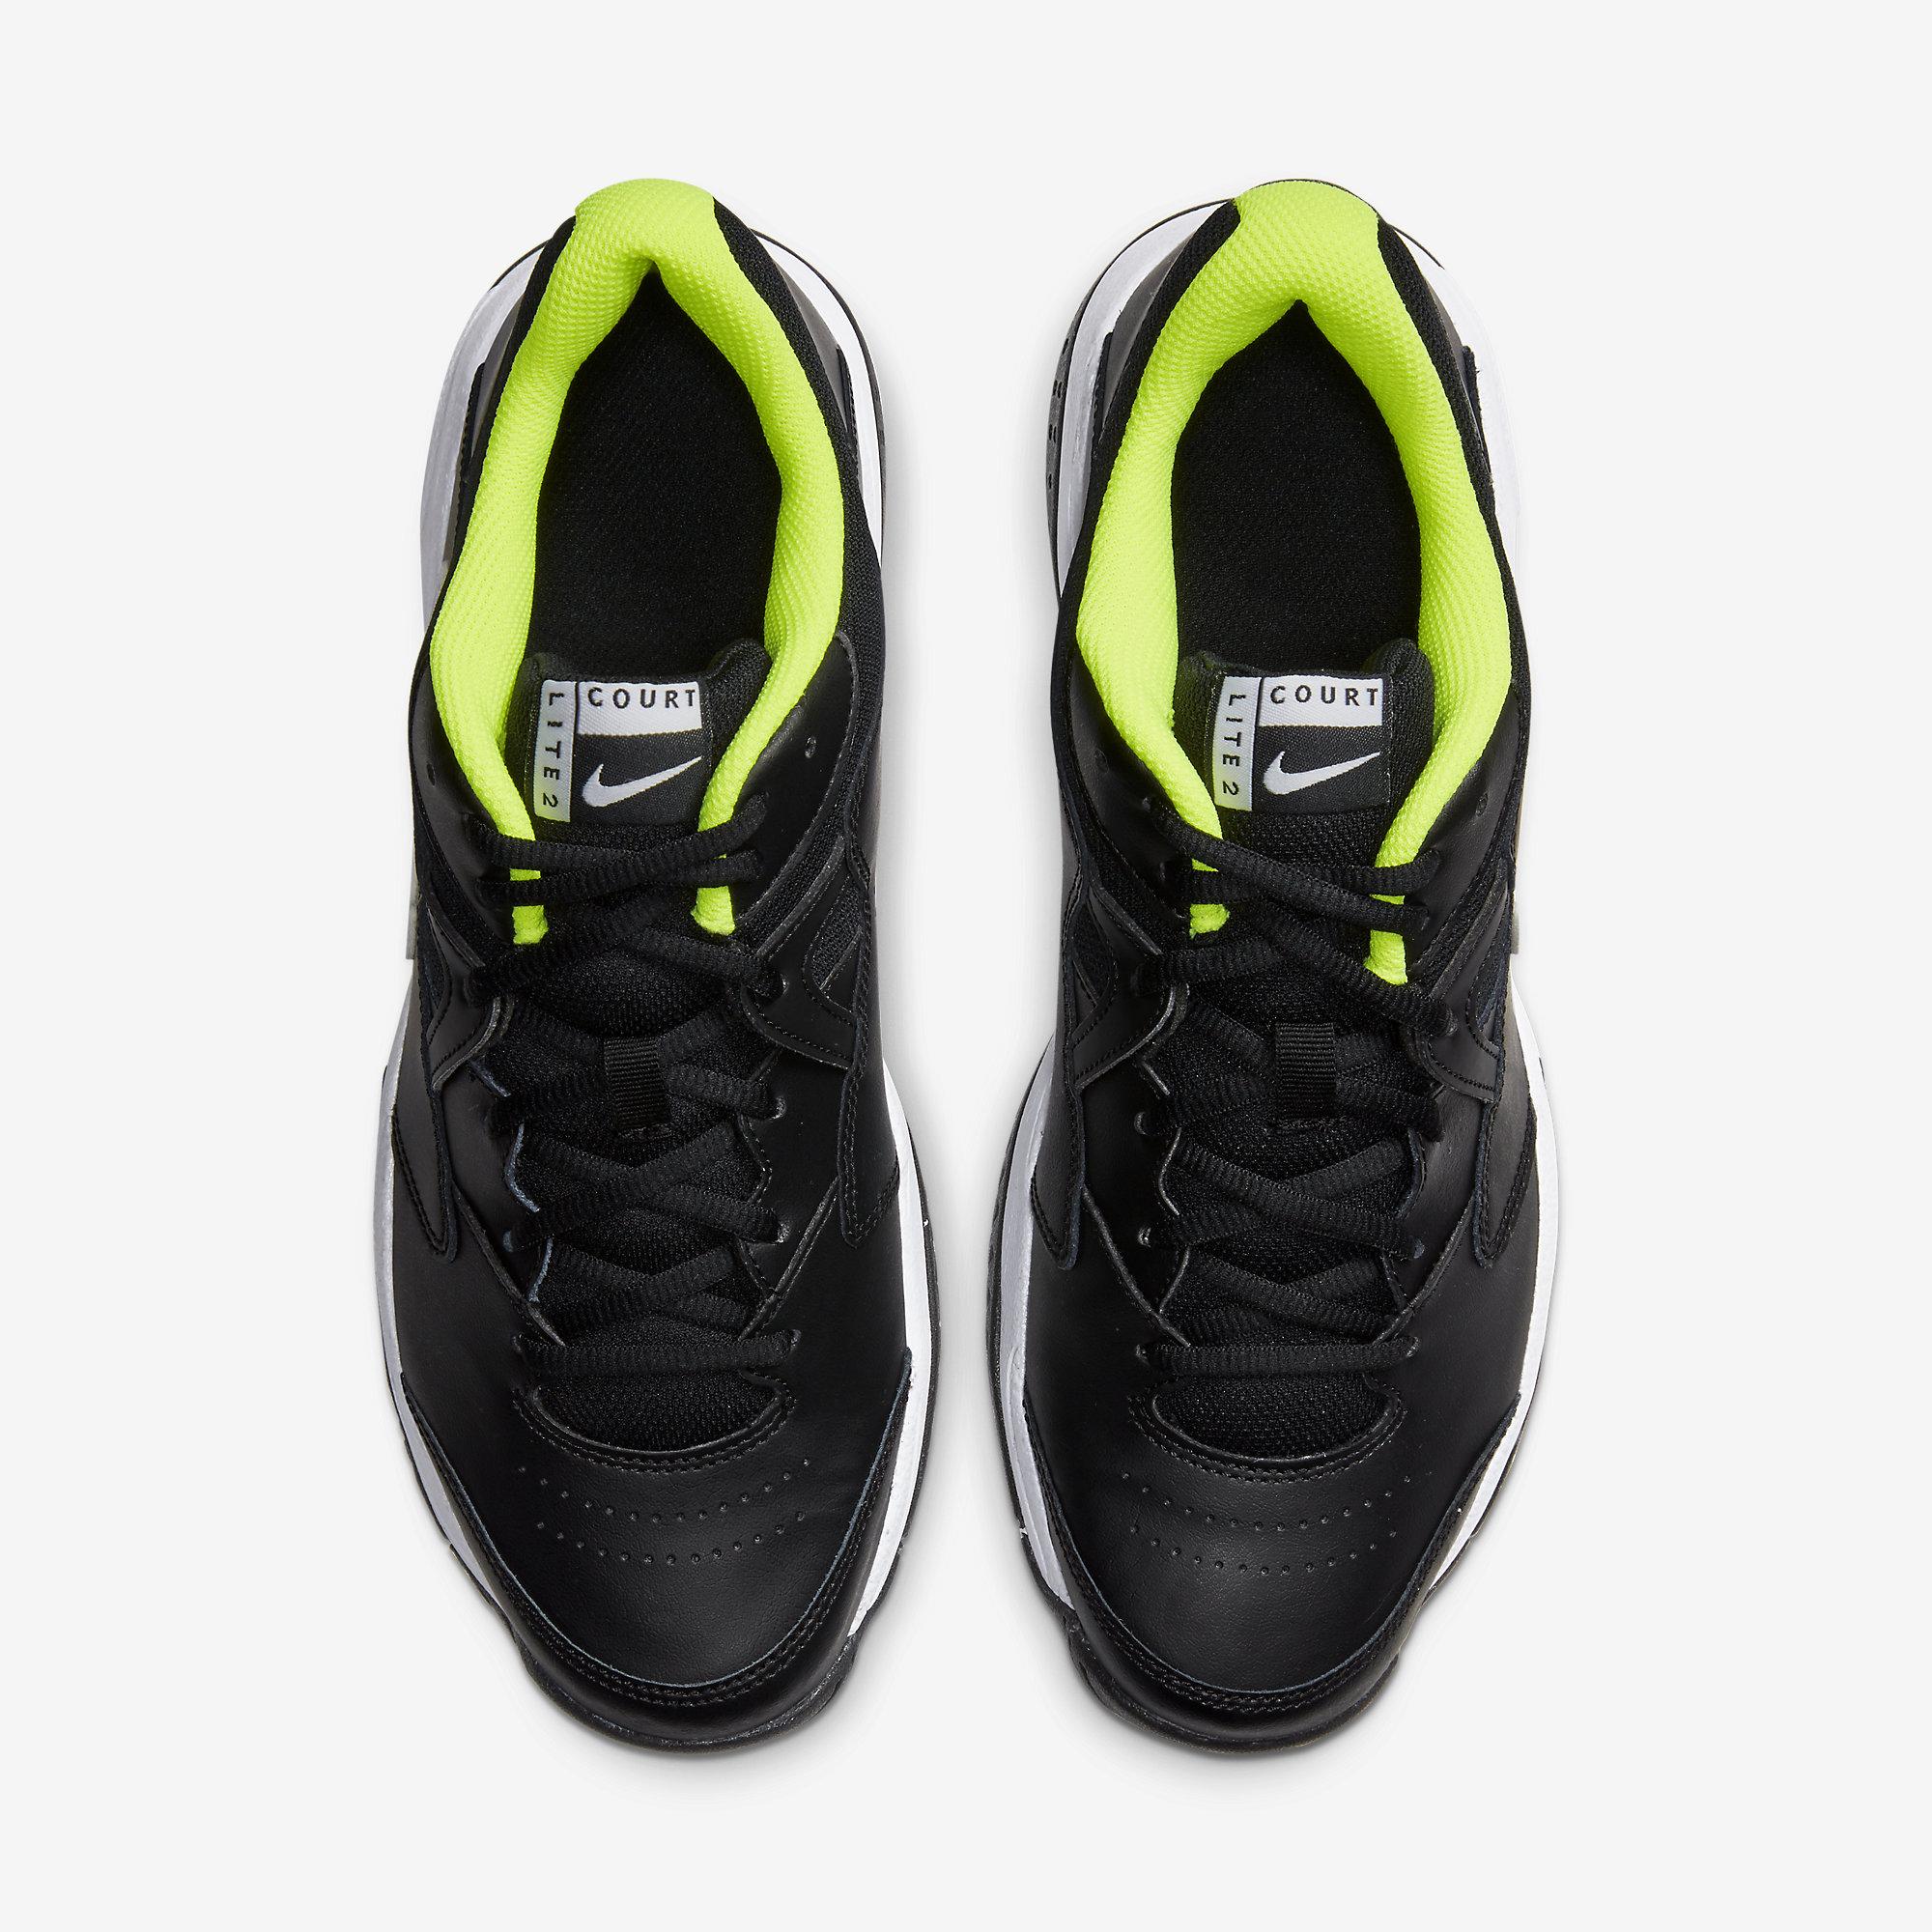 Nike Mens Court Lite 2 Tennis Shoes - Black/Volt ...